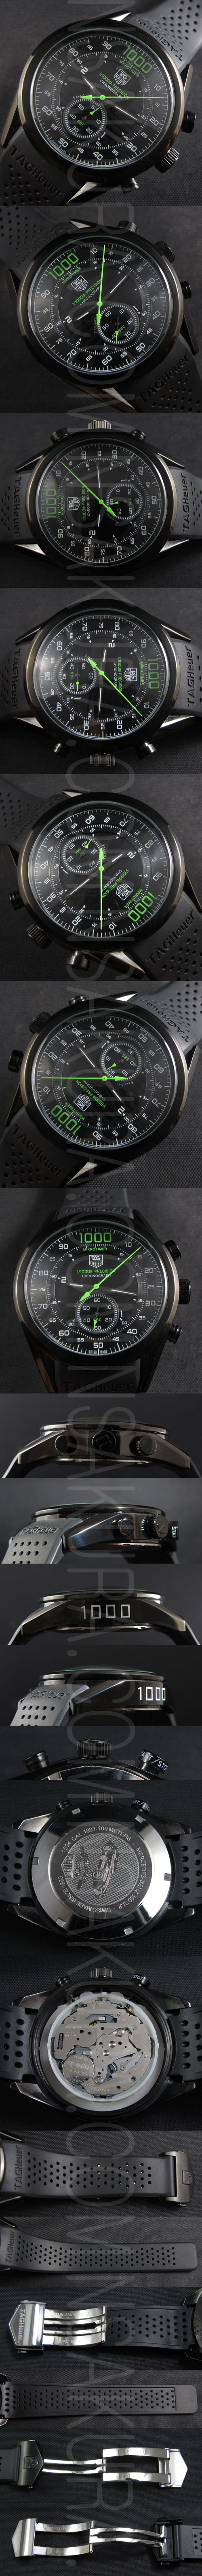 長く使える、タグホイヤー マイクロタイマー フライング 1000メンズ腕時計